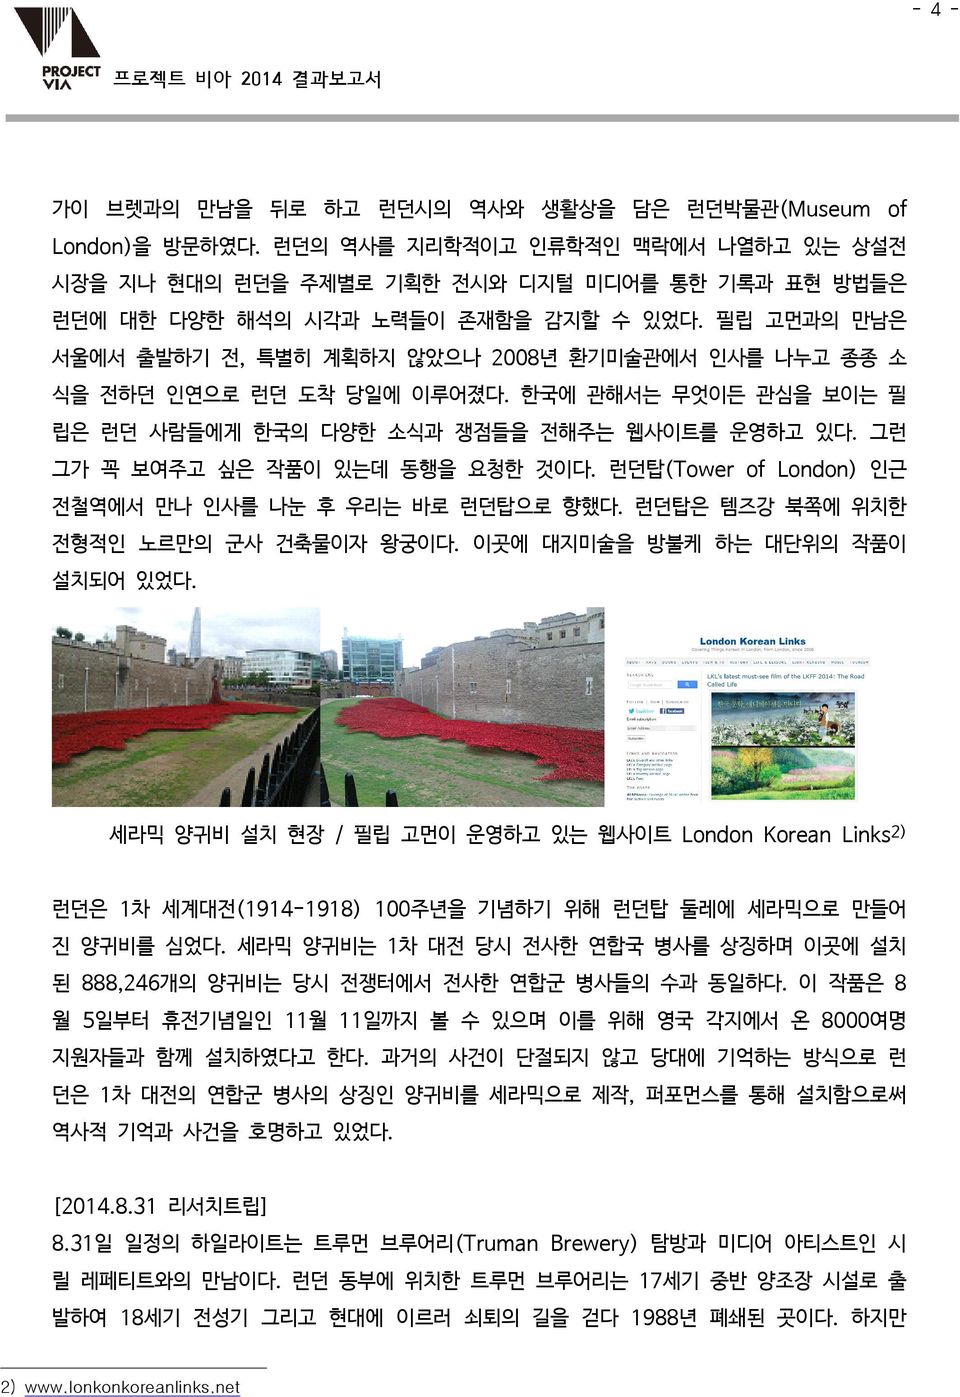 필립 고먼과의 만남은 서울에서 출발하기 전, 특별히 계획하지 않았으나 2008년 환기미술관에서 인사를 나누고 종종 소 식을 전하던 인연으로 런던 도착 당일에 이루어졌다. 한국에 관해서는 무엇이든 관심을 보이는 필 립은 런던 사람들에게 한국의 다양한 소식과 쟁점들을 전해주는 웹사이트를 운영하고 있다.